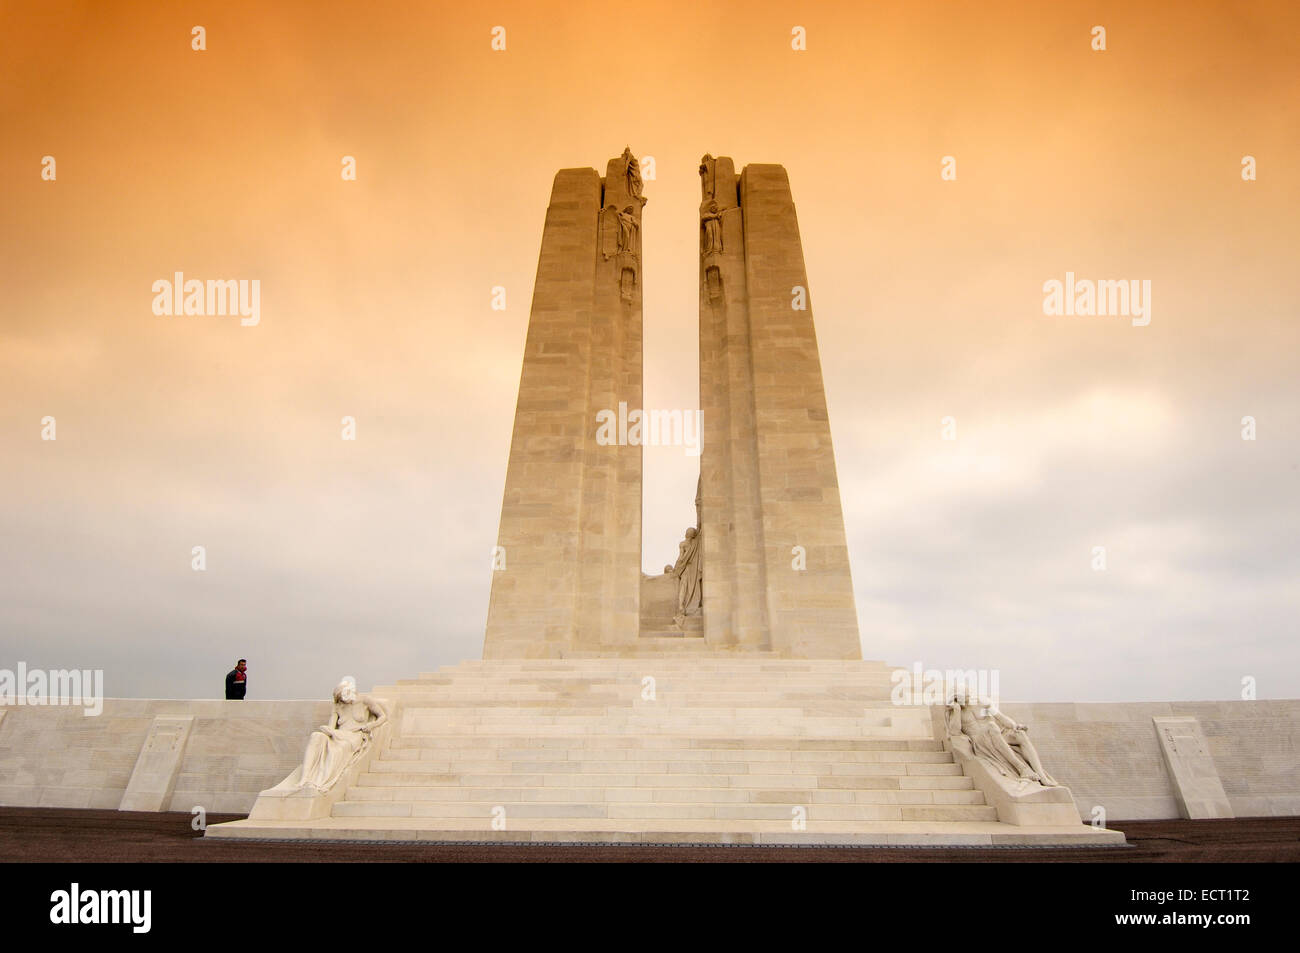 Vimy, Mémorial de la Première Guerre mondiale, le Pas-de-Calais, vallée de la Somme, France, Europe Banque D'Images